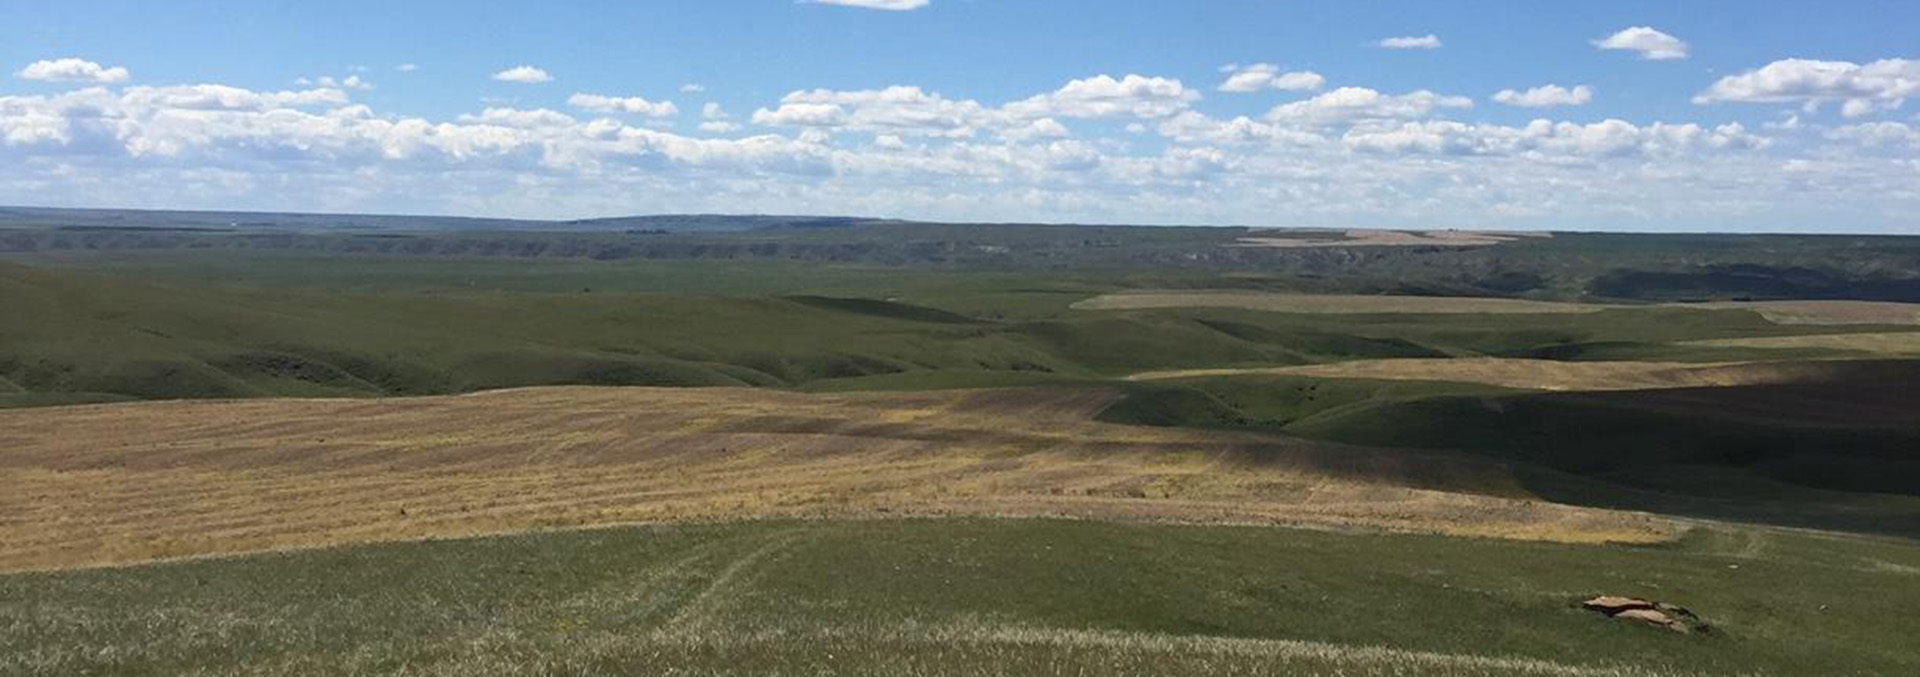 Montana land for sale HJ Quarters Farm no wind